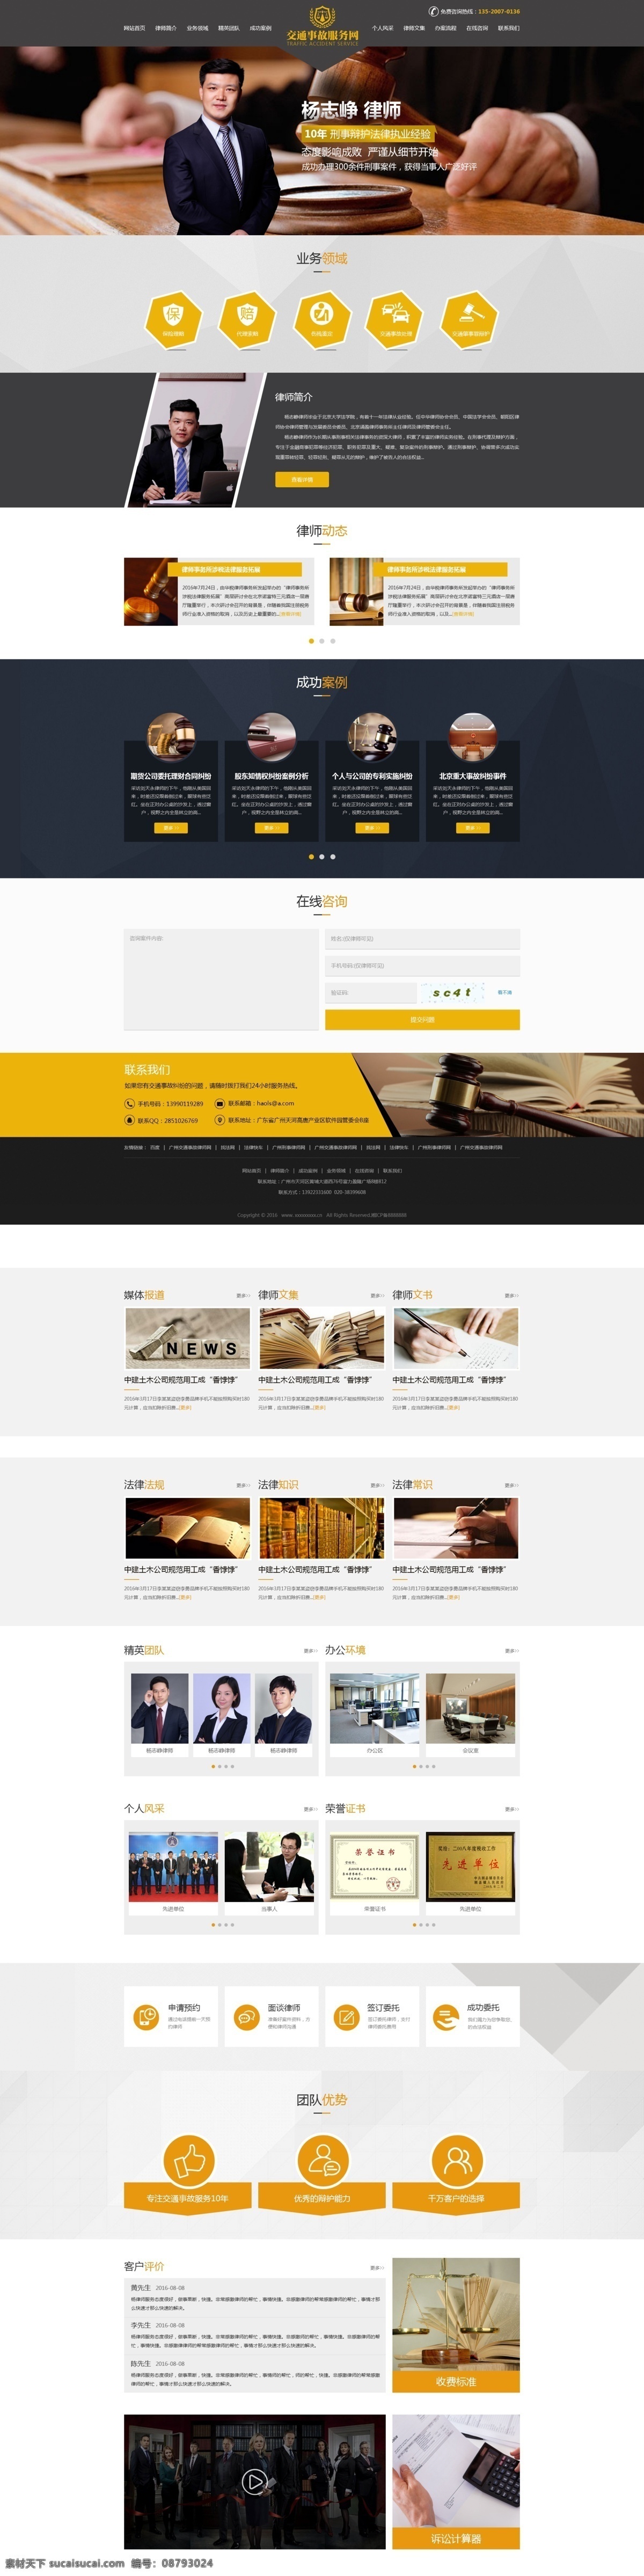 黄色 黑色 简洁 大气 法律 企业 网站首页 效果图 企业网站 模板 白色 简洁大气 金色 企业网站模板 首页模板